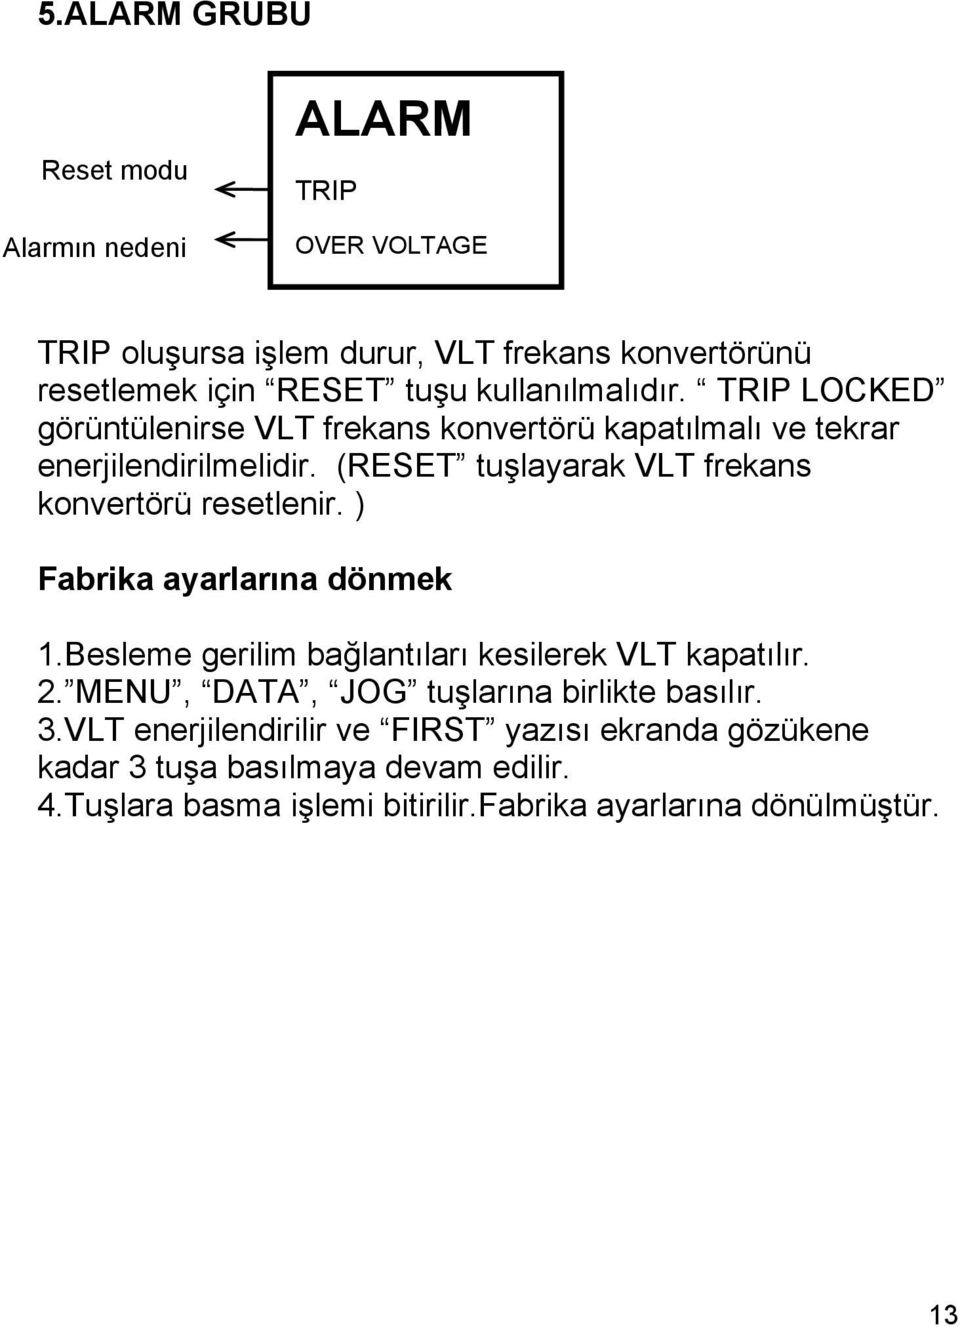 TRIP LOCKED görüntülenirse VLT frekans konvertörü kapatılmalı ve tekrar enerjilendirilmelidir. (RESET tuşlayarak VLT frekans konvertörü resetlenir.